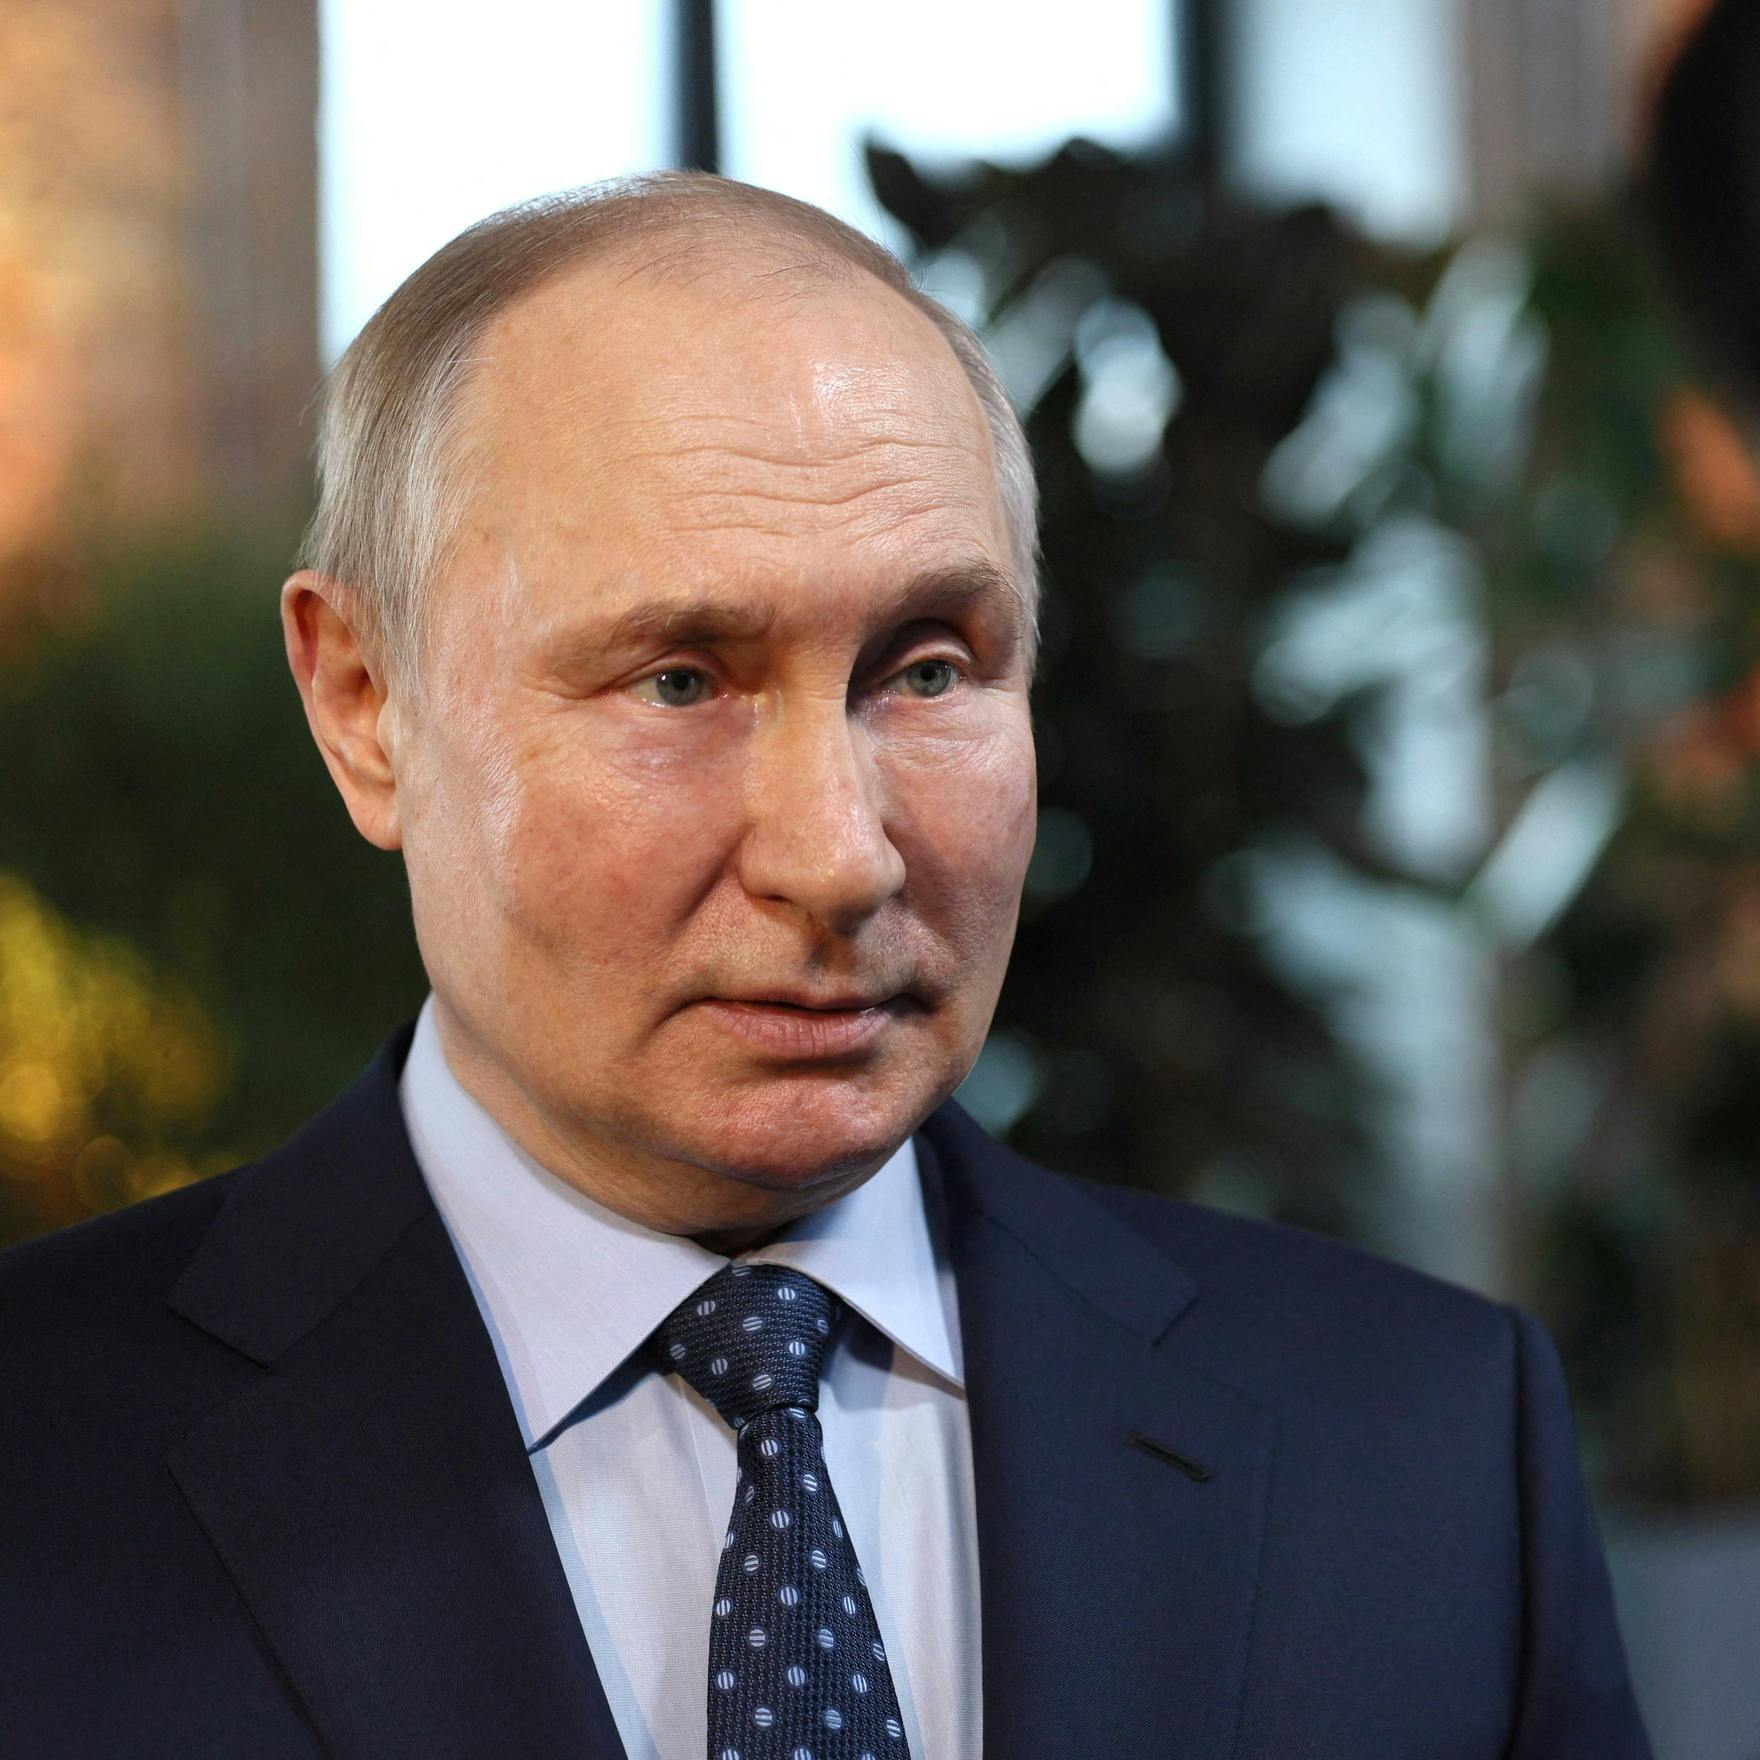 Wie zit achter droneaanvallen Moskou? Zowel Oekraïne als Rusland niet uitgesloten